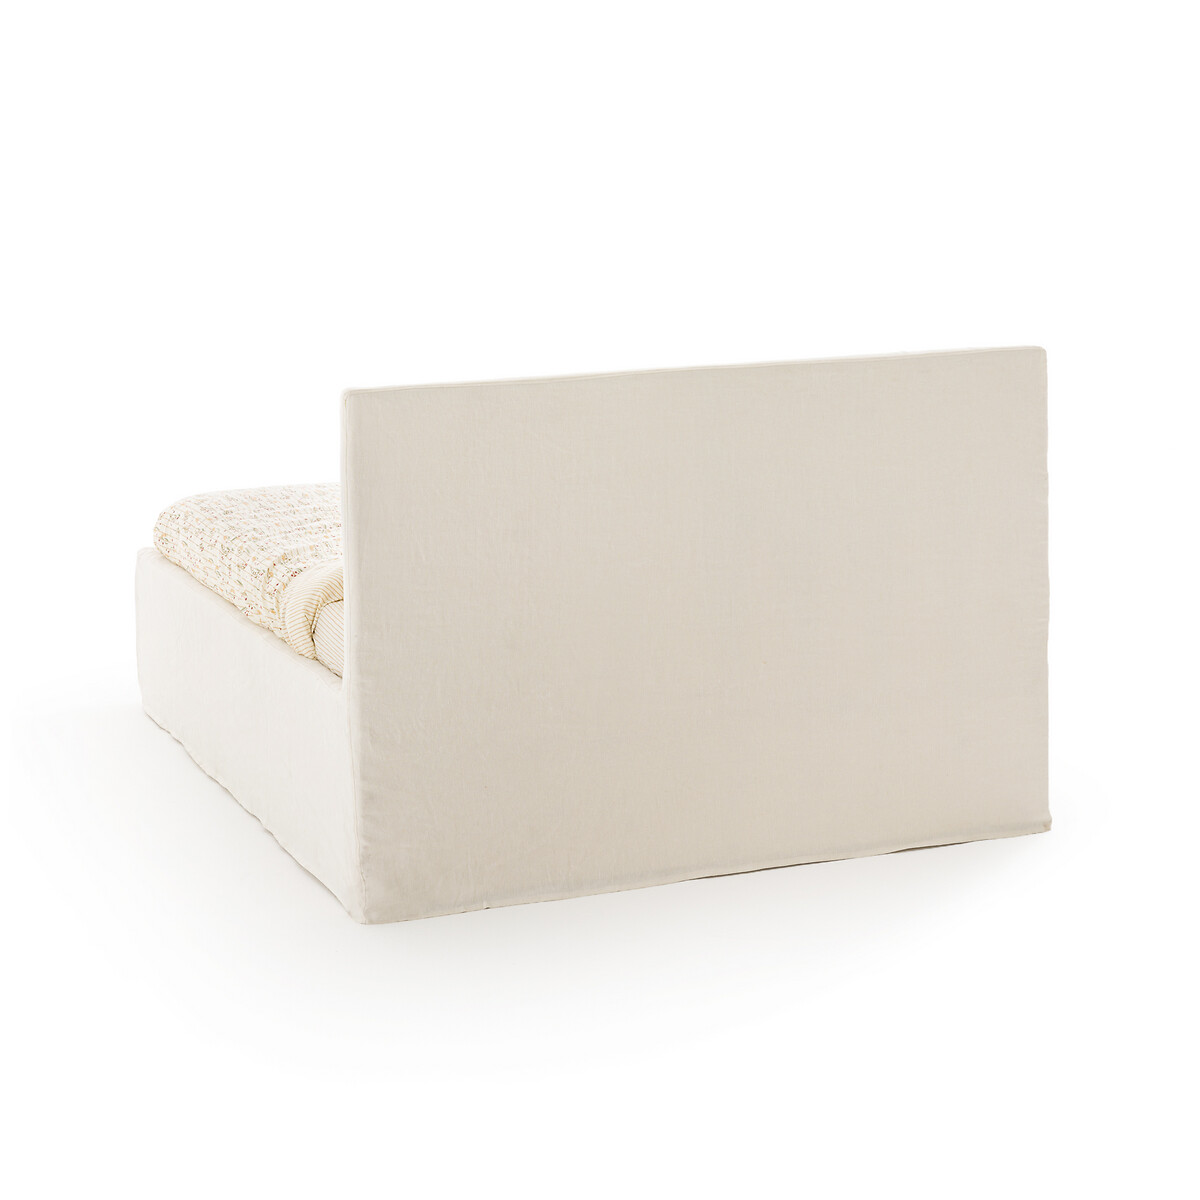 Кровать LaRedoute Со съемным чехлом Kendari 160 x 200 см белый, размер 160 x 200 см - фото 3